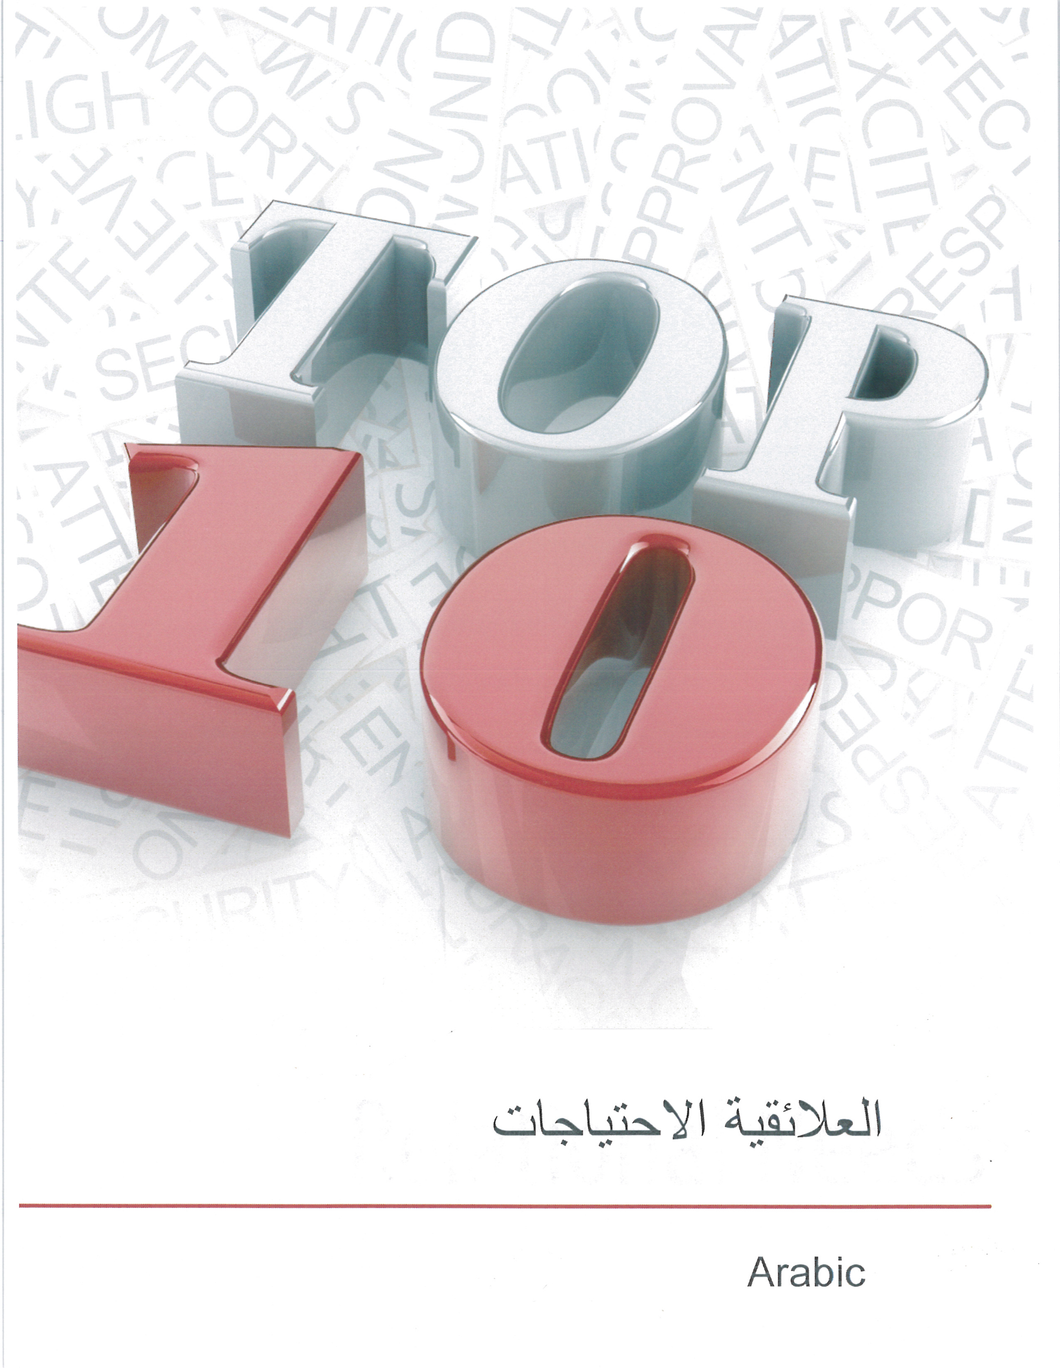 Top 10 Relational Needs Workbook (Arabic)